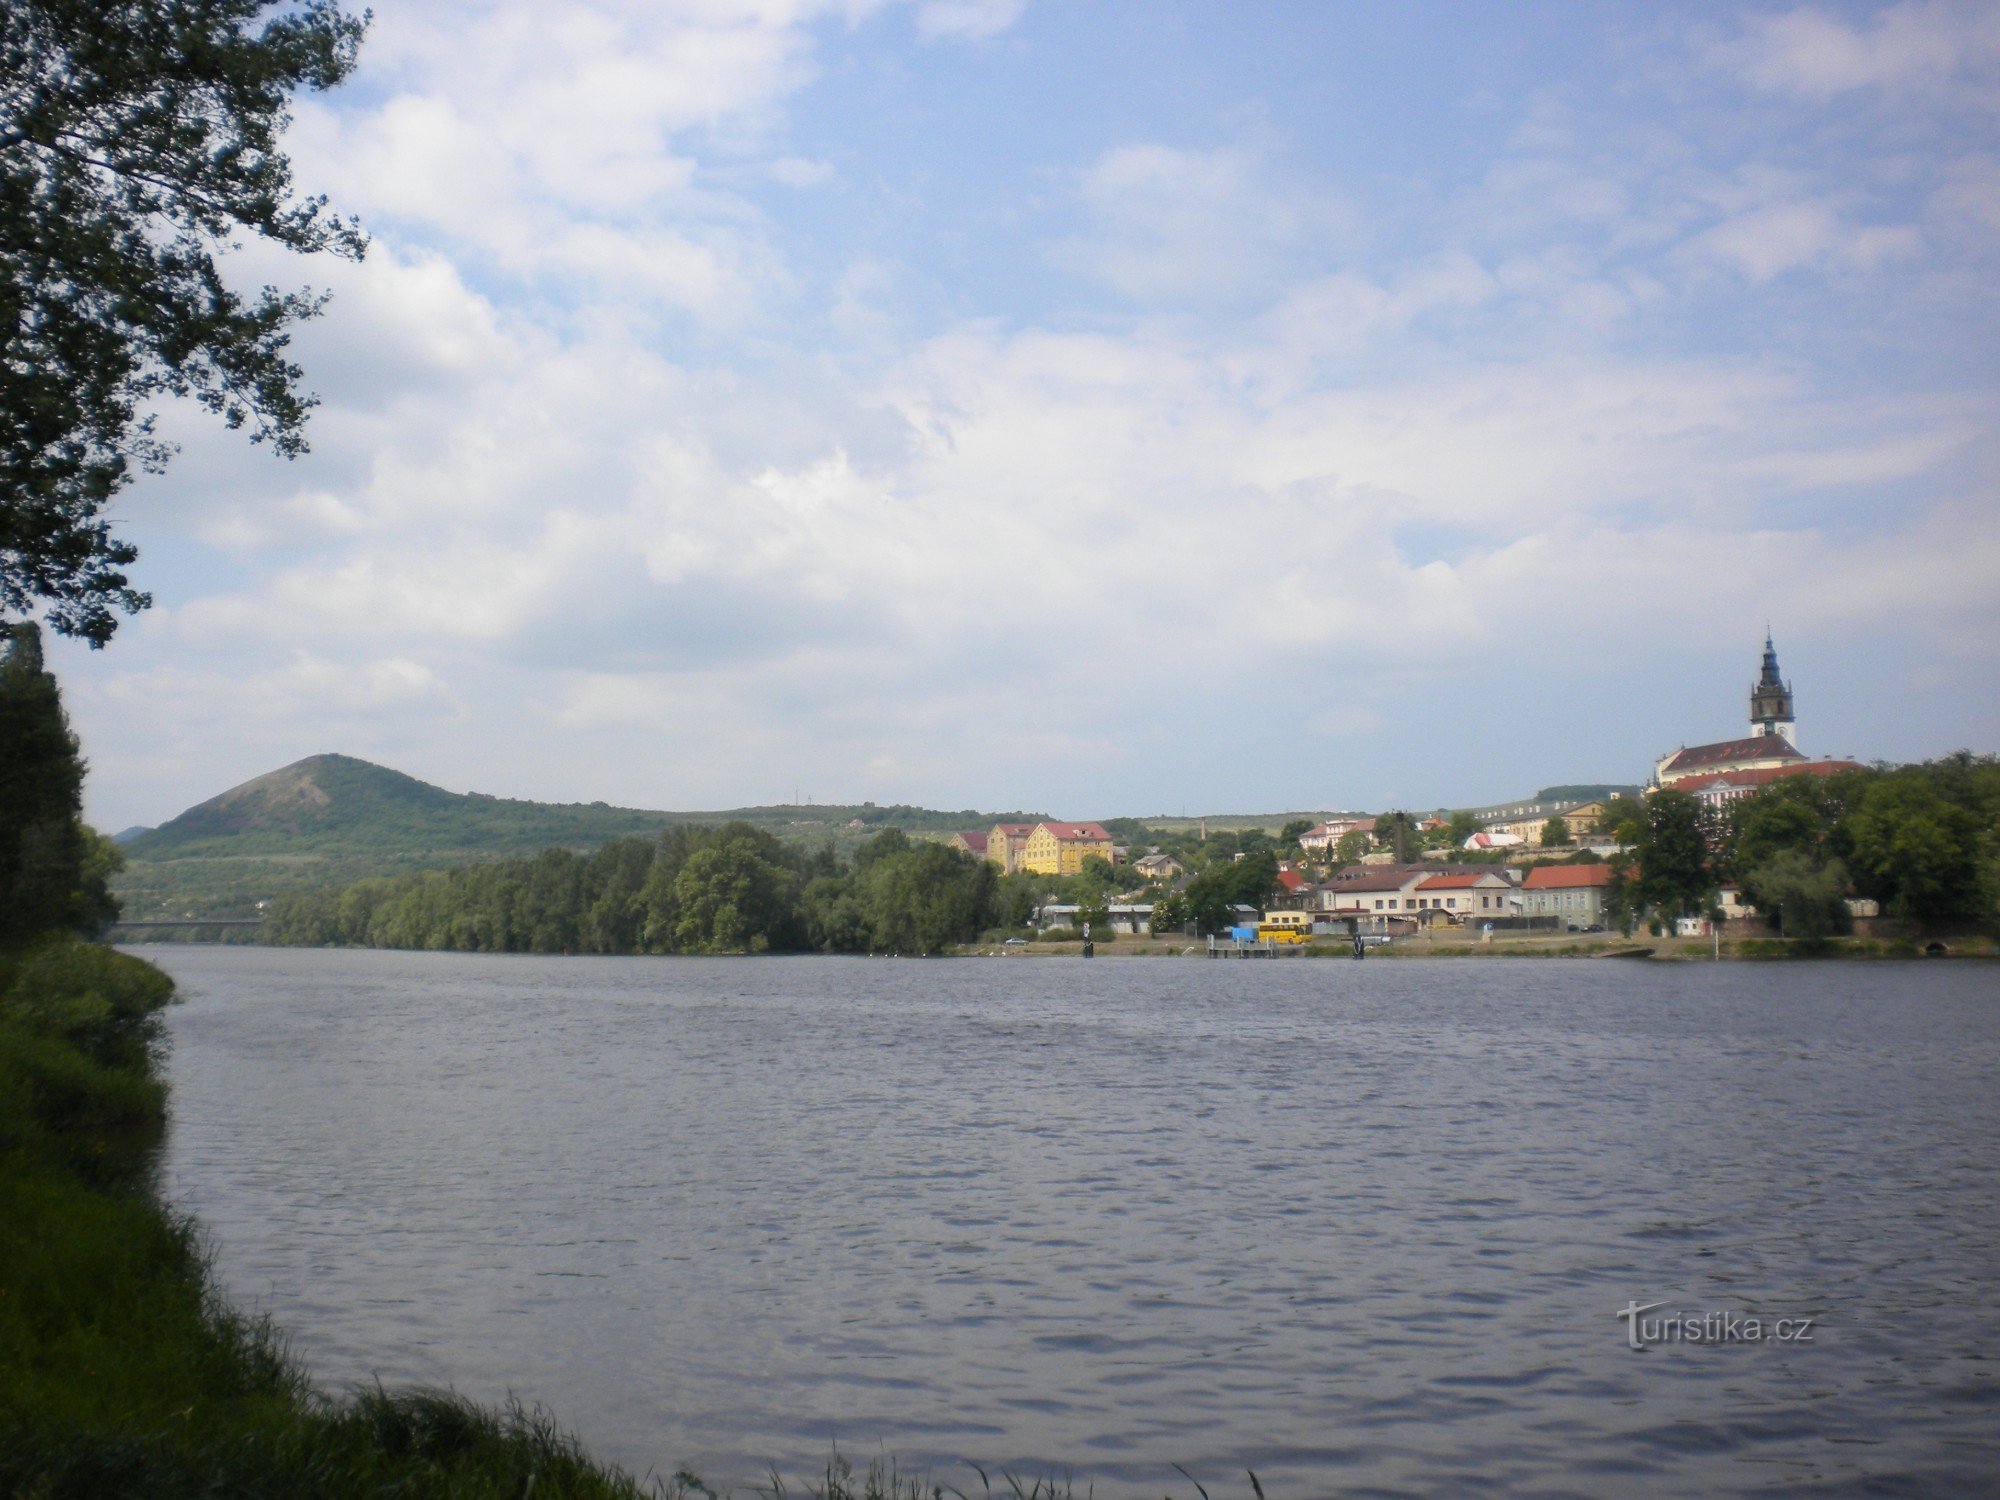 Udsigt fra Tyrš-broen over Litoměřice og Radobyl-bakken.